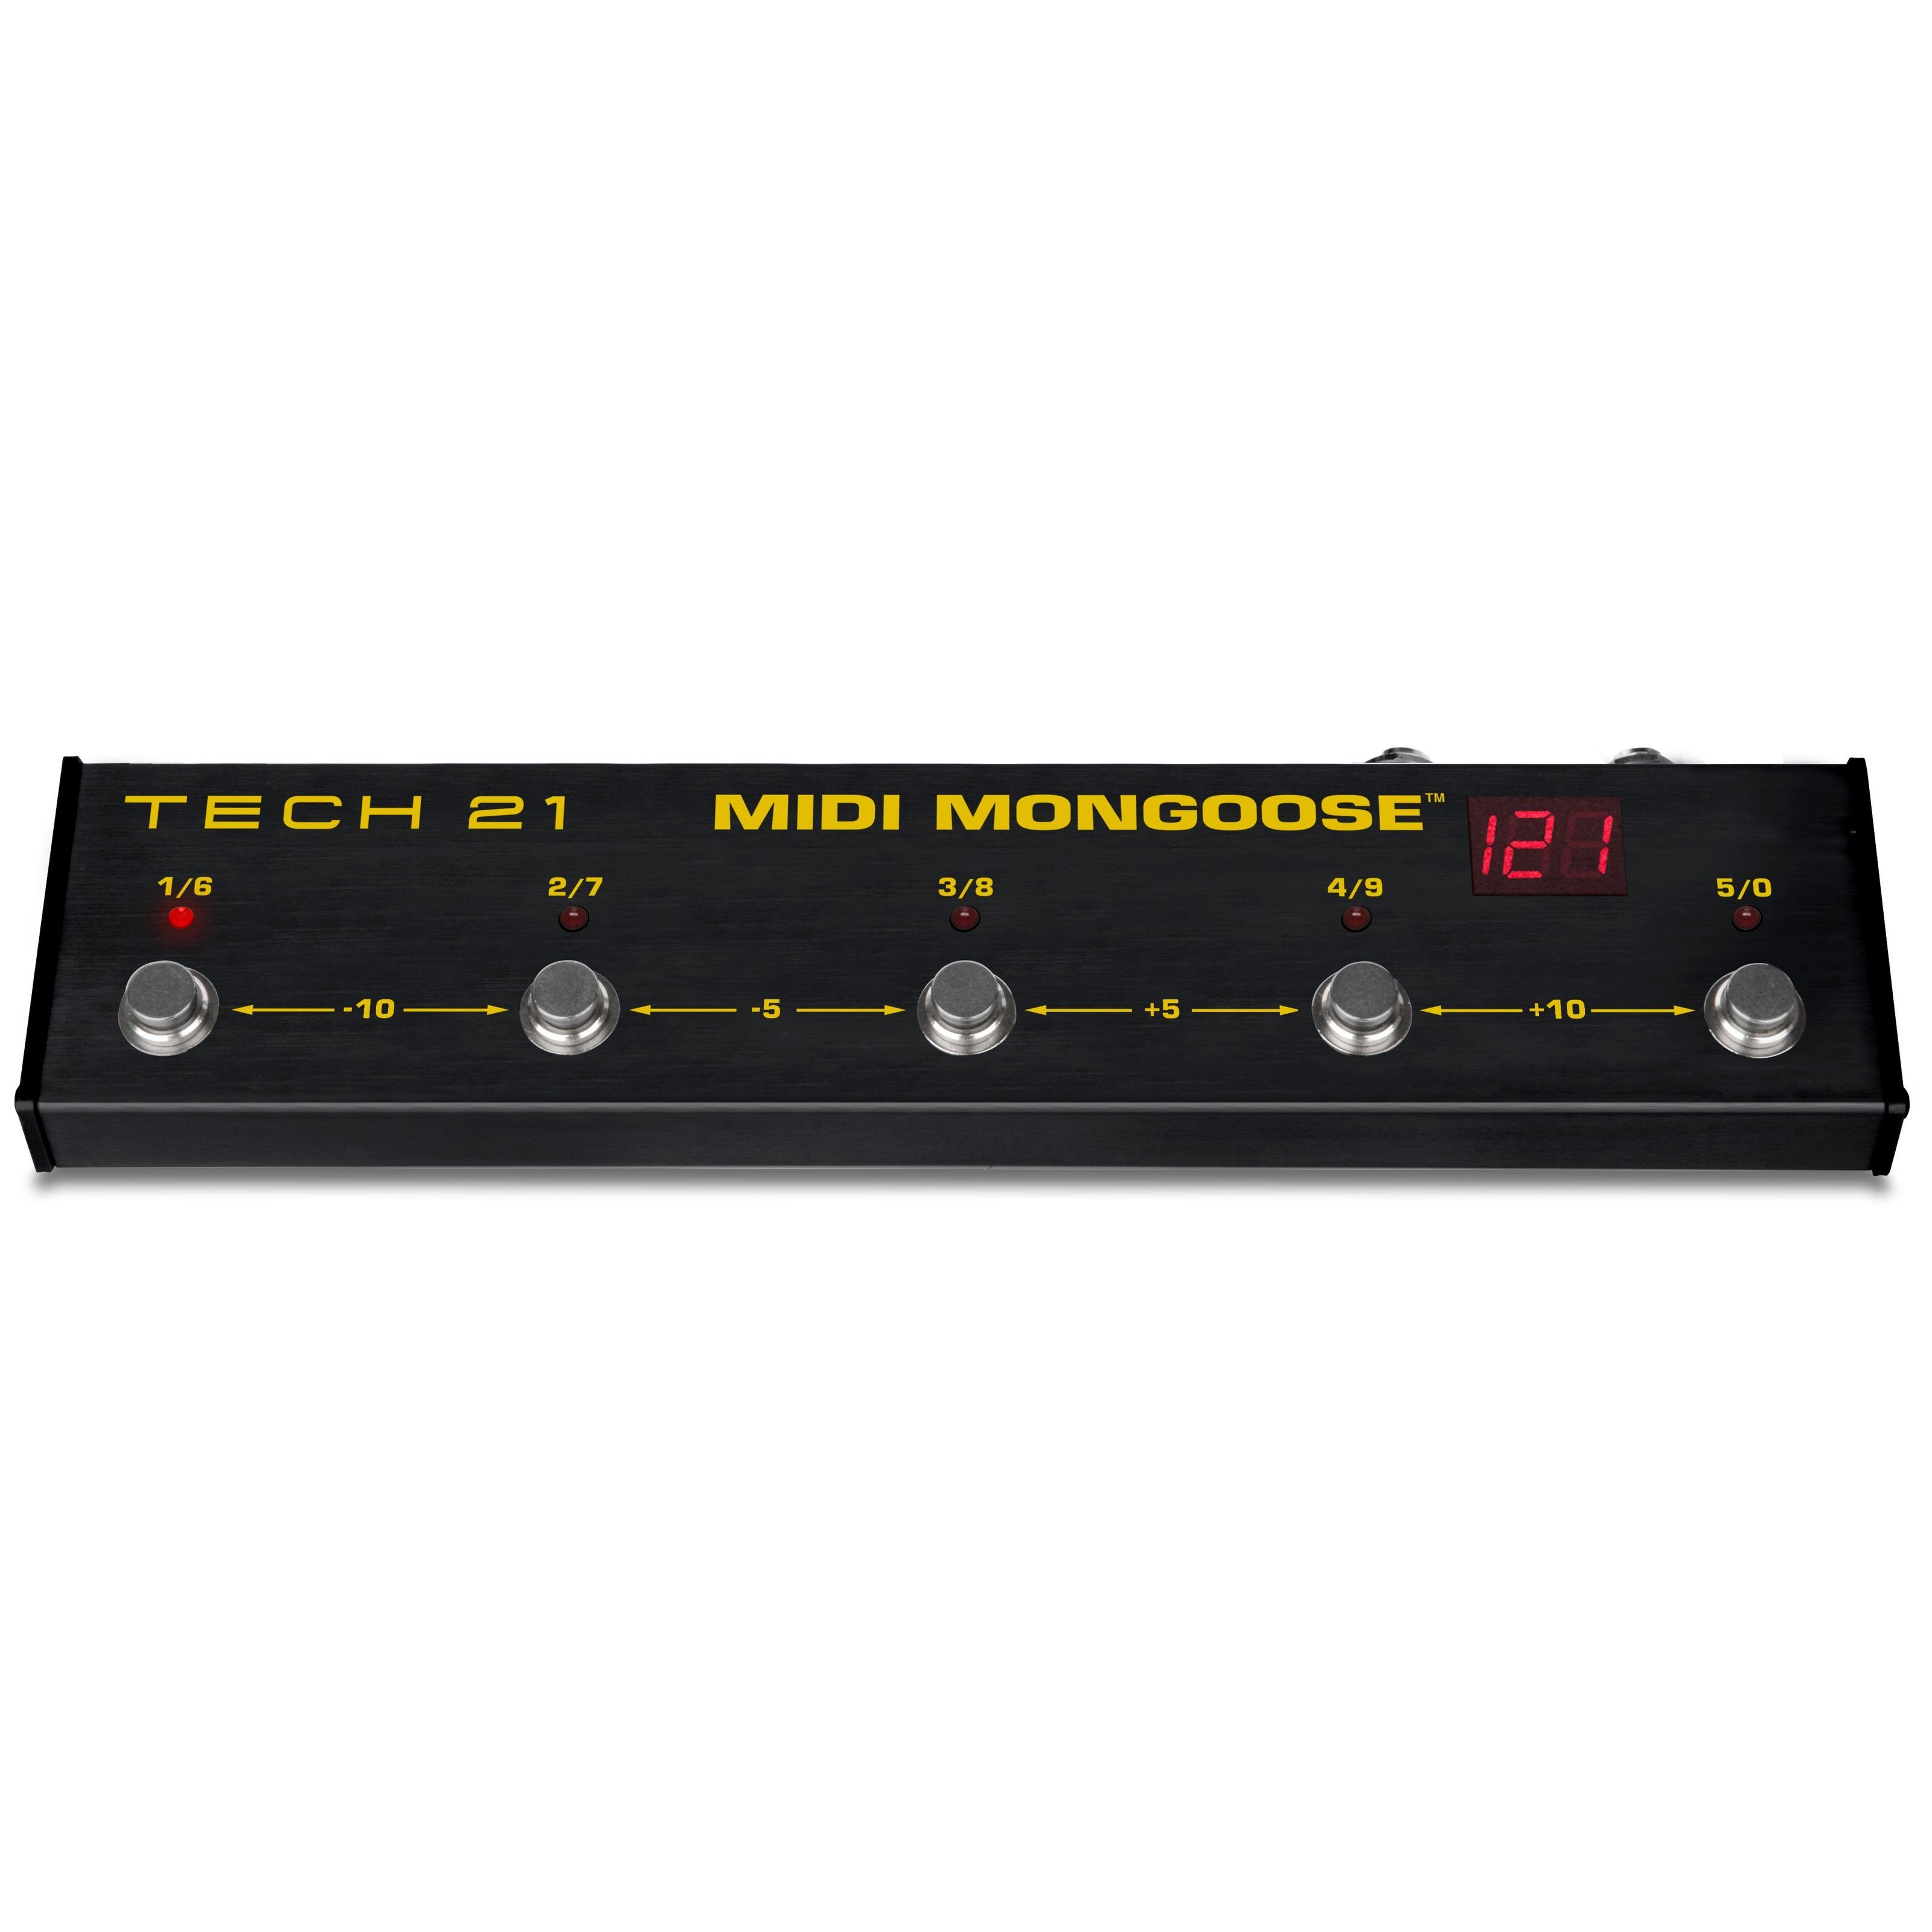 - (MIDI MIDI Mongoose Gitarrenverstärker) für Fußschalter Verstärker 21 Tech